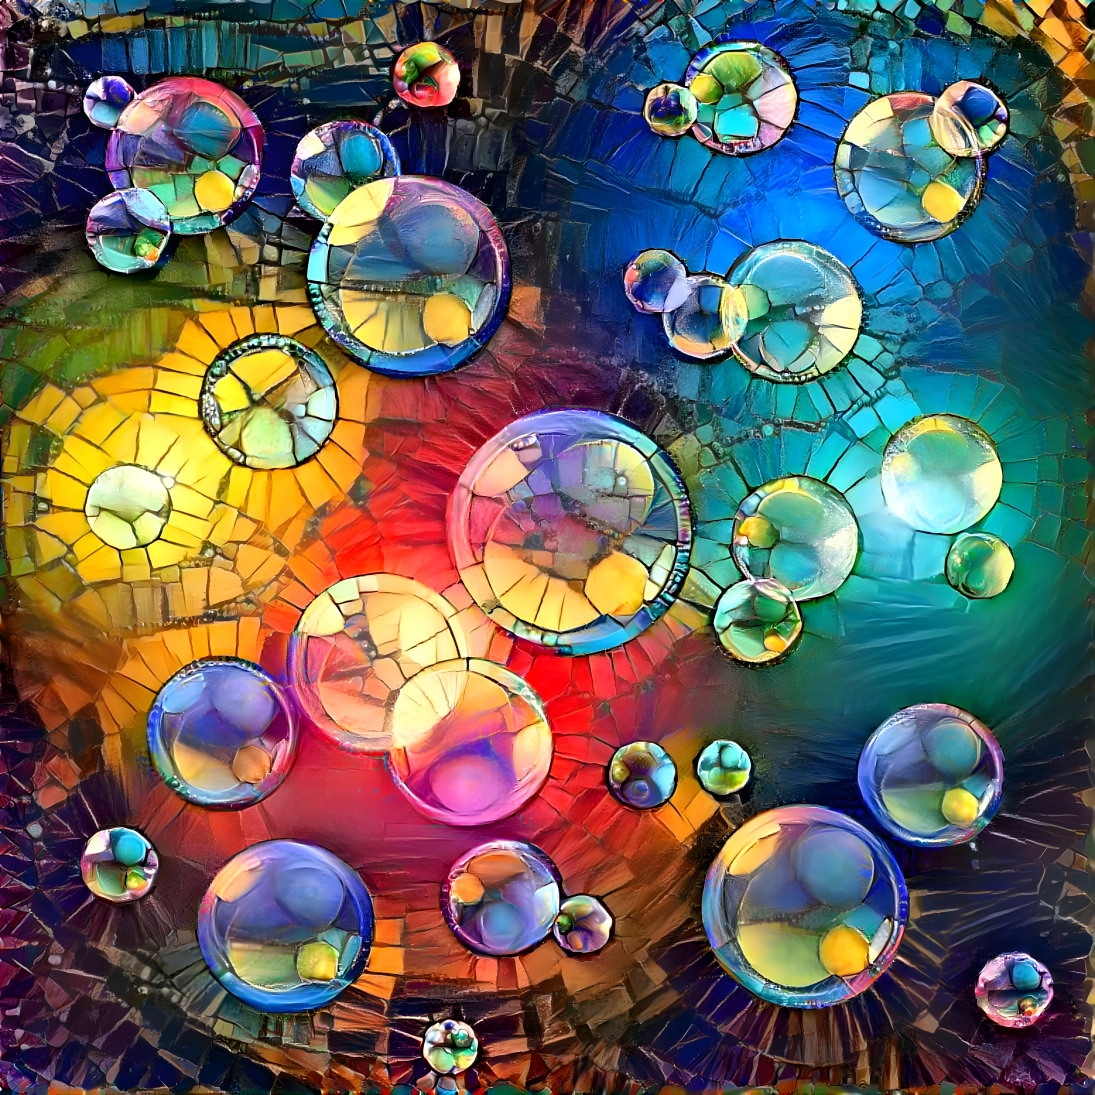 Magic bubbles